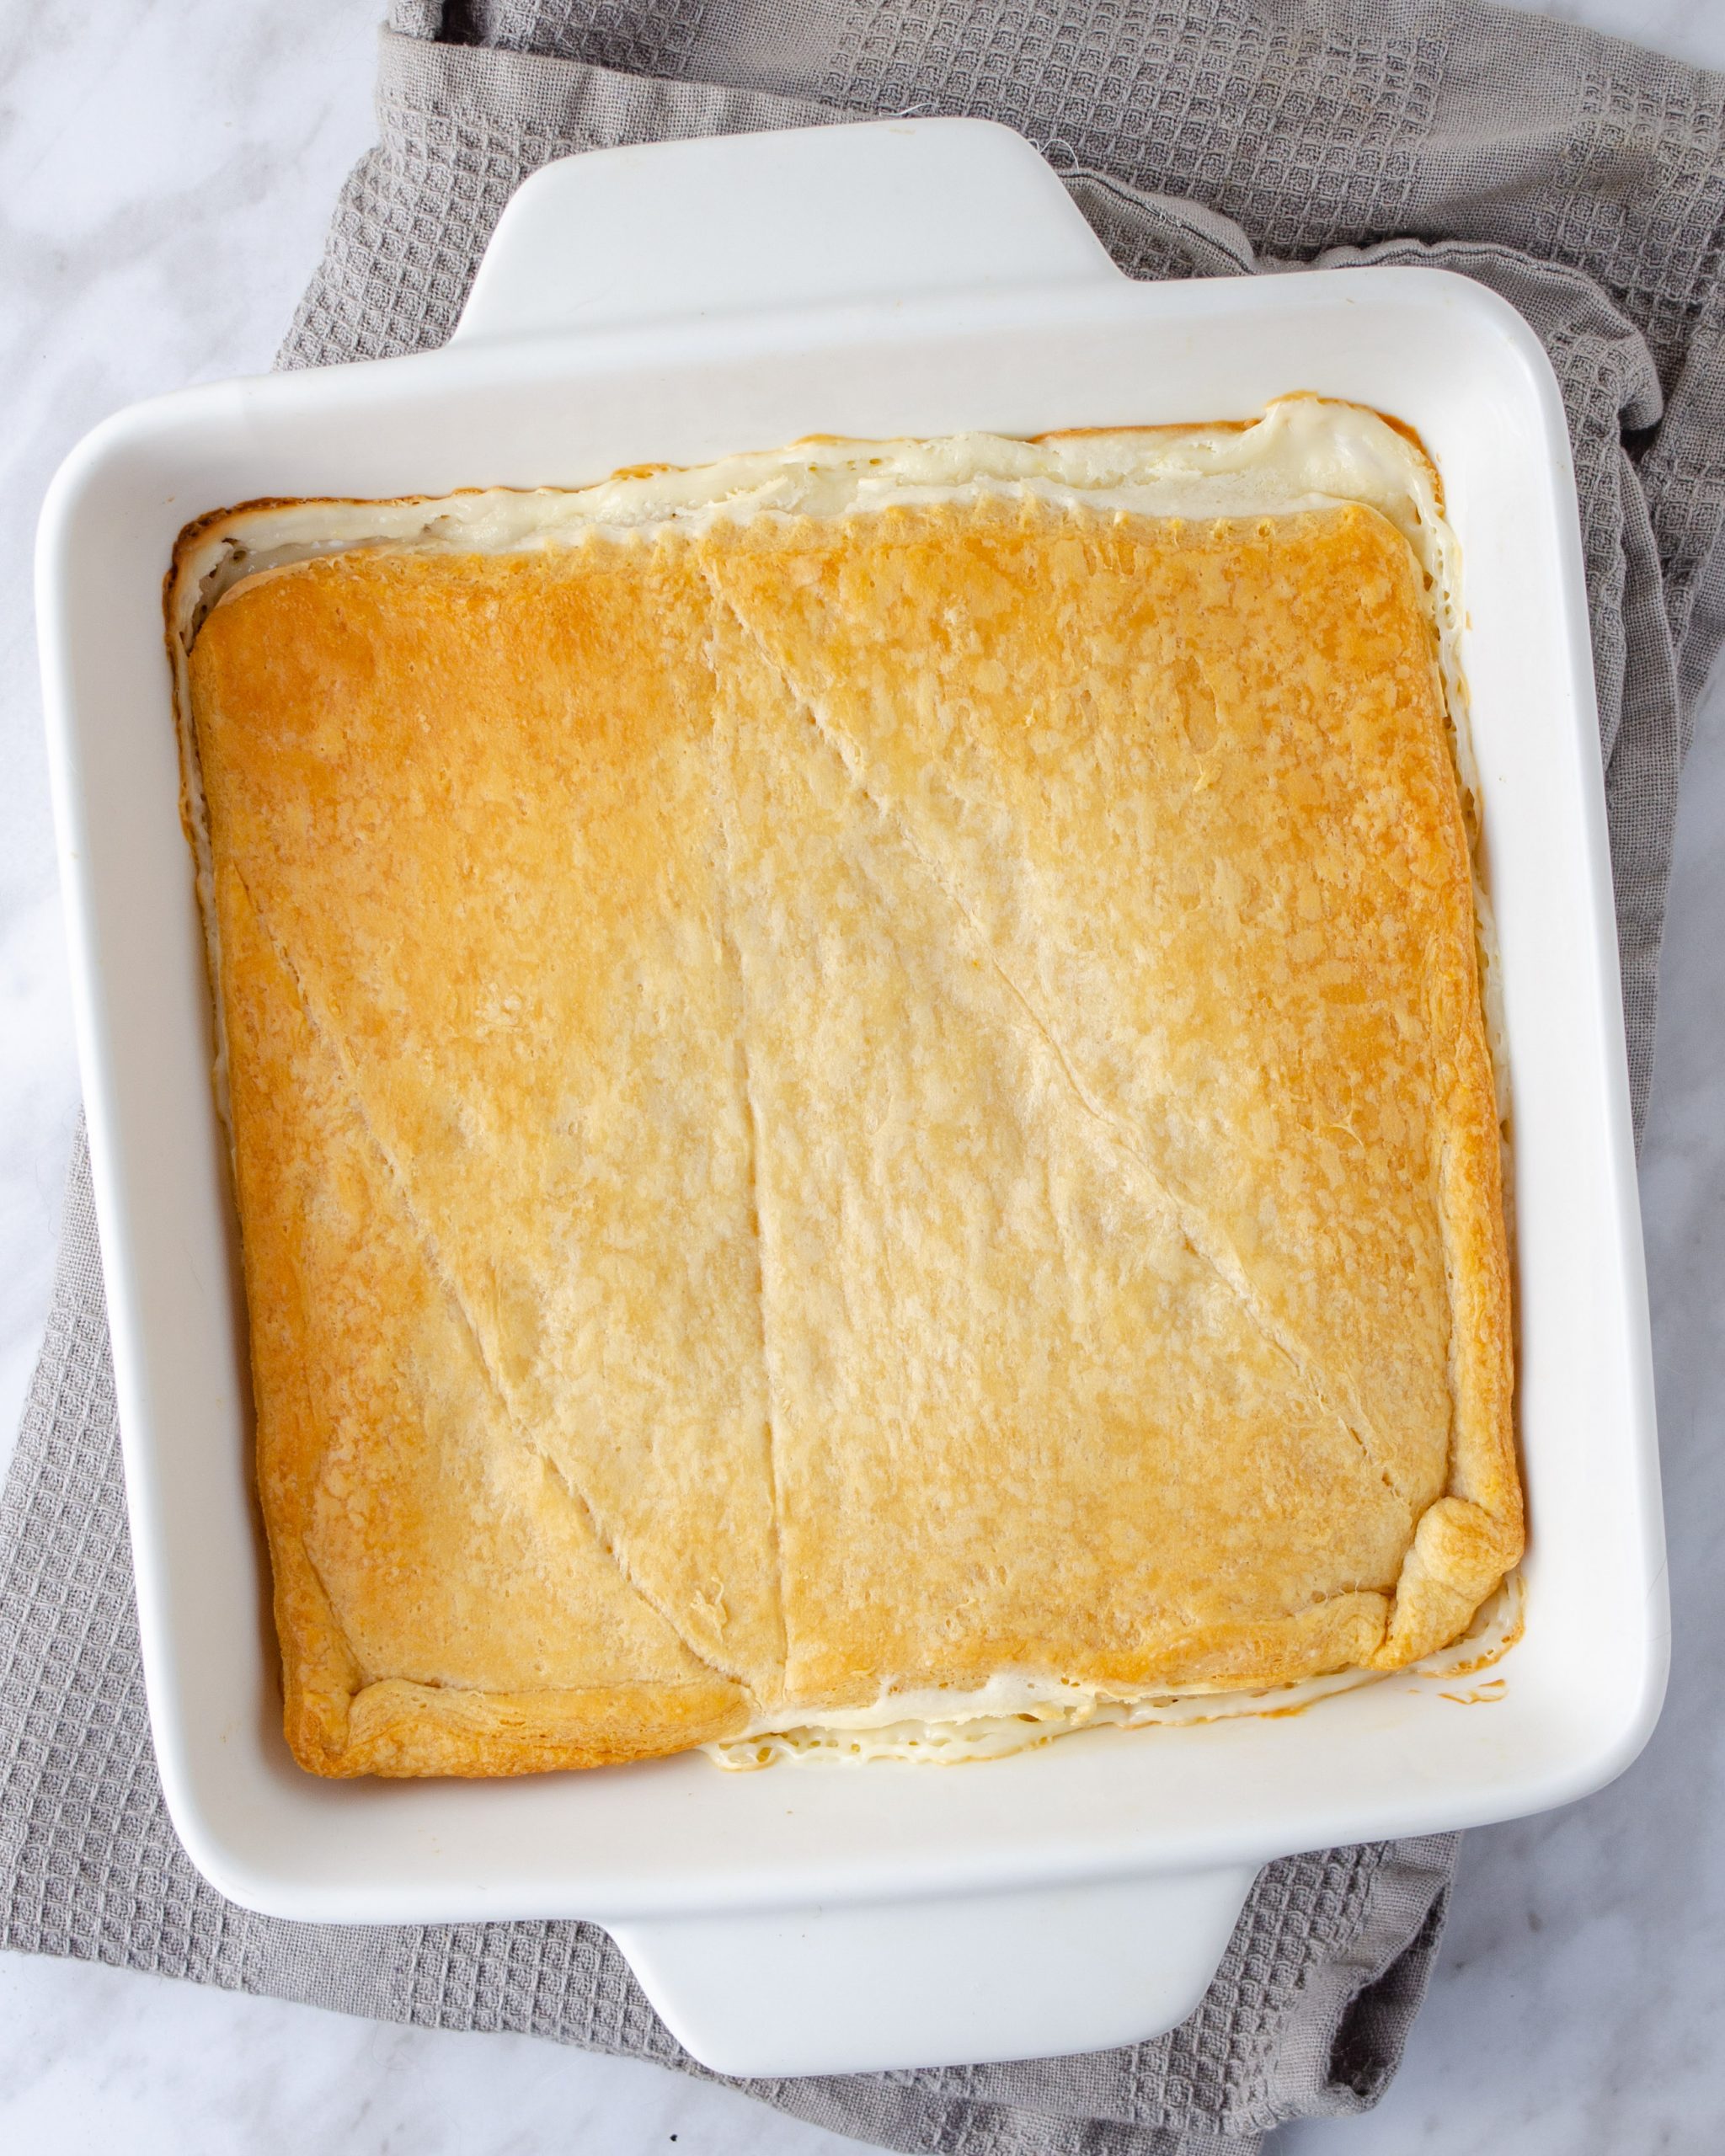 Bake for 25-30 minutes until golden brown.